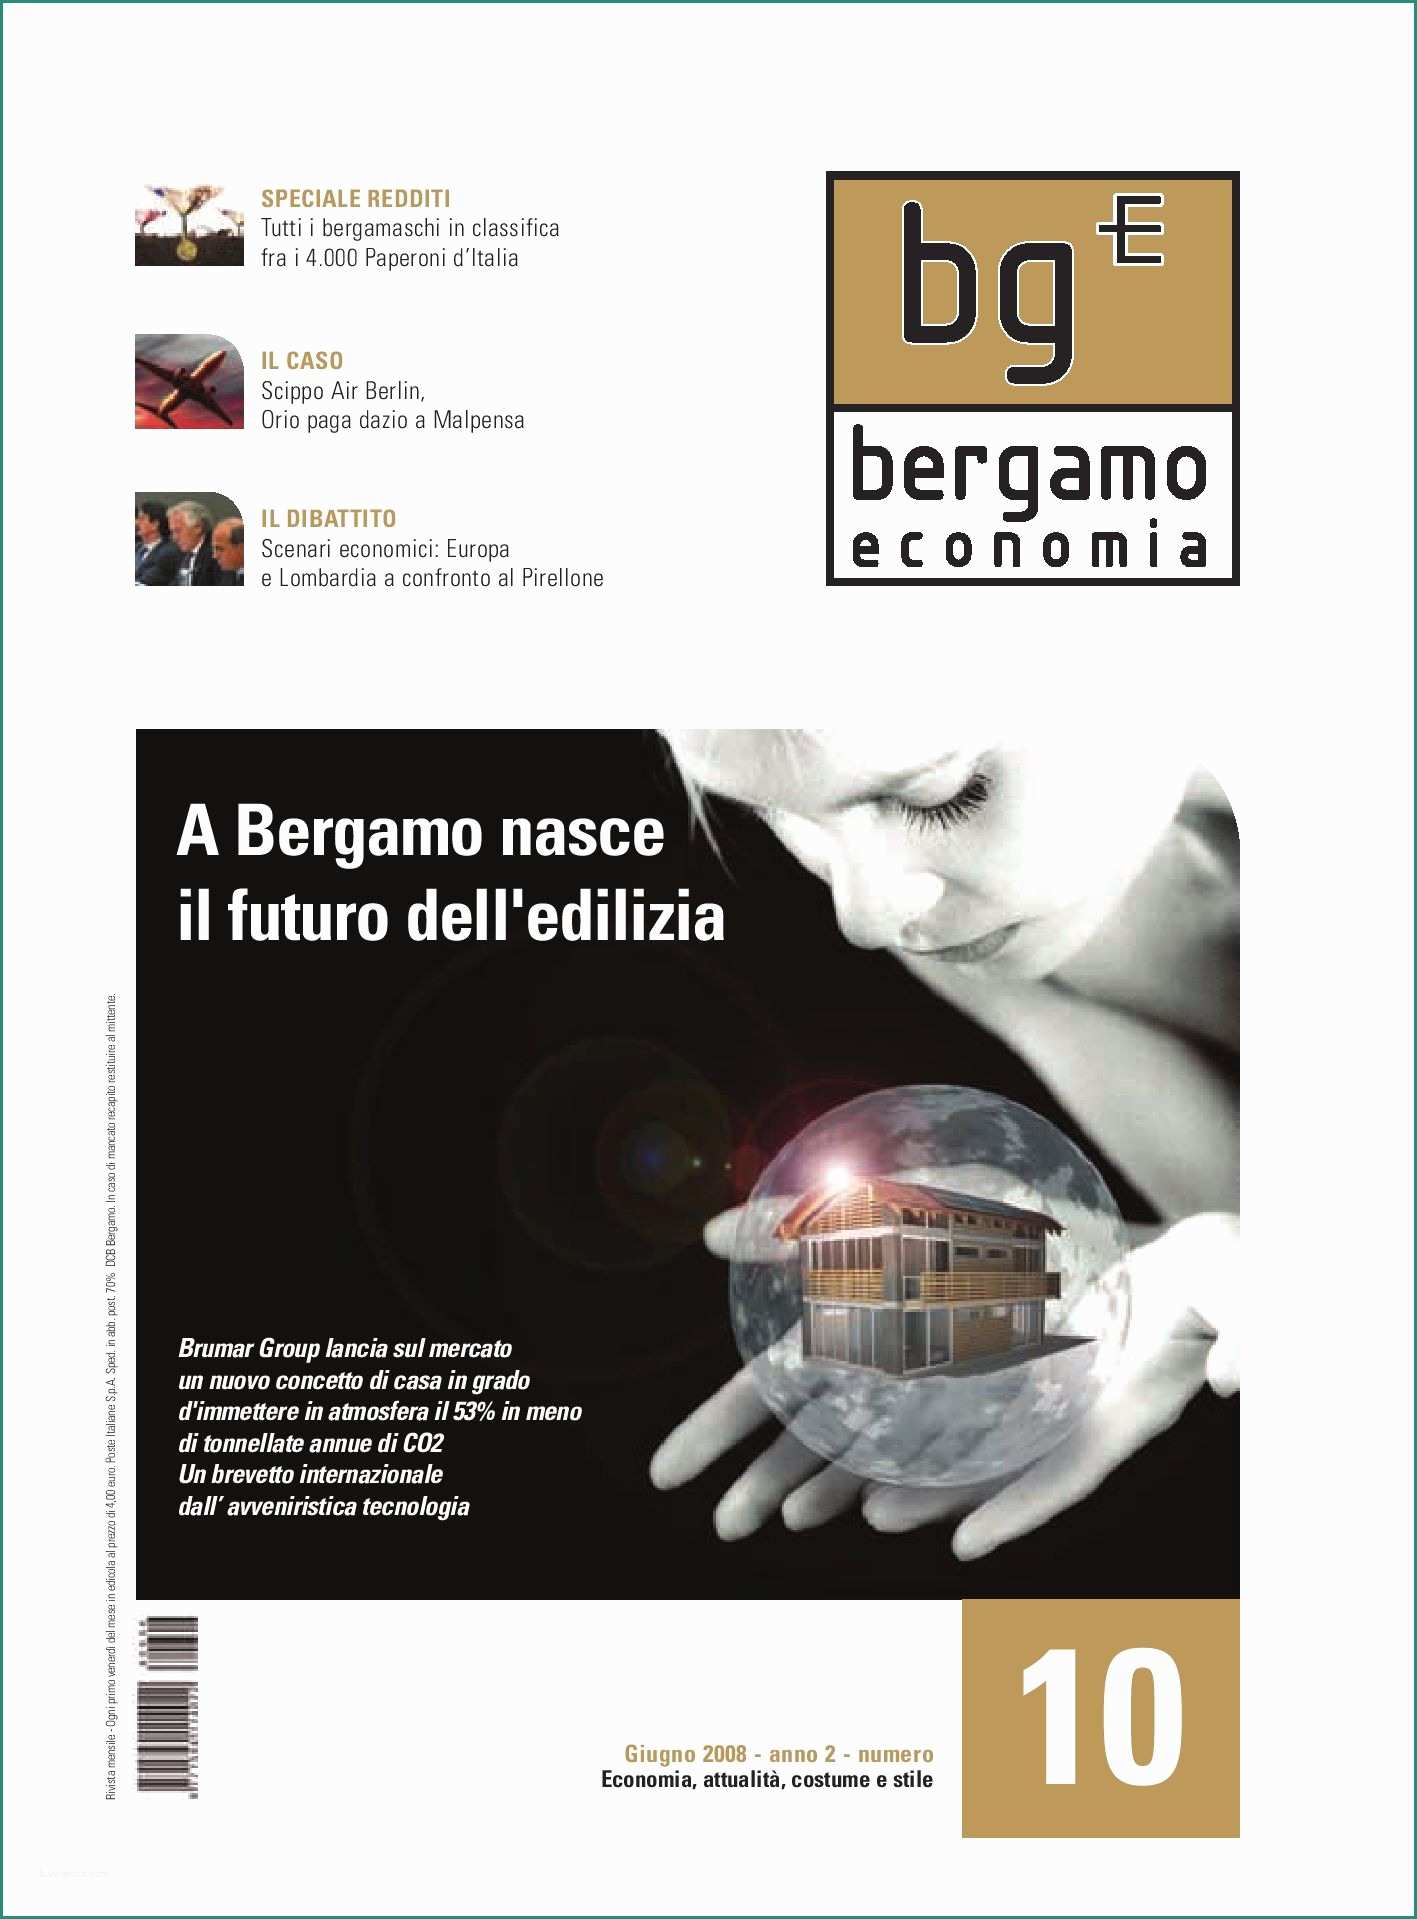 Simbolo Estintore Dwg E Bergamo Economia 10 by Stefano Morleo issuu